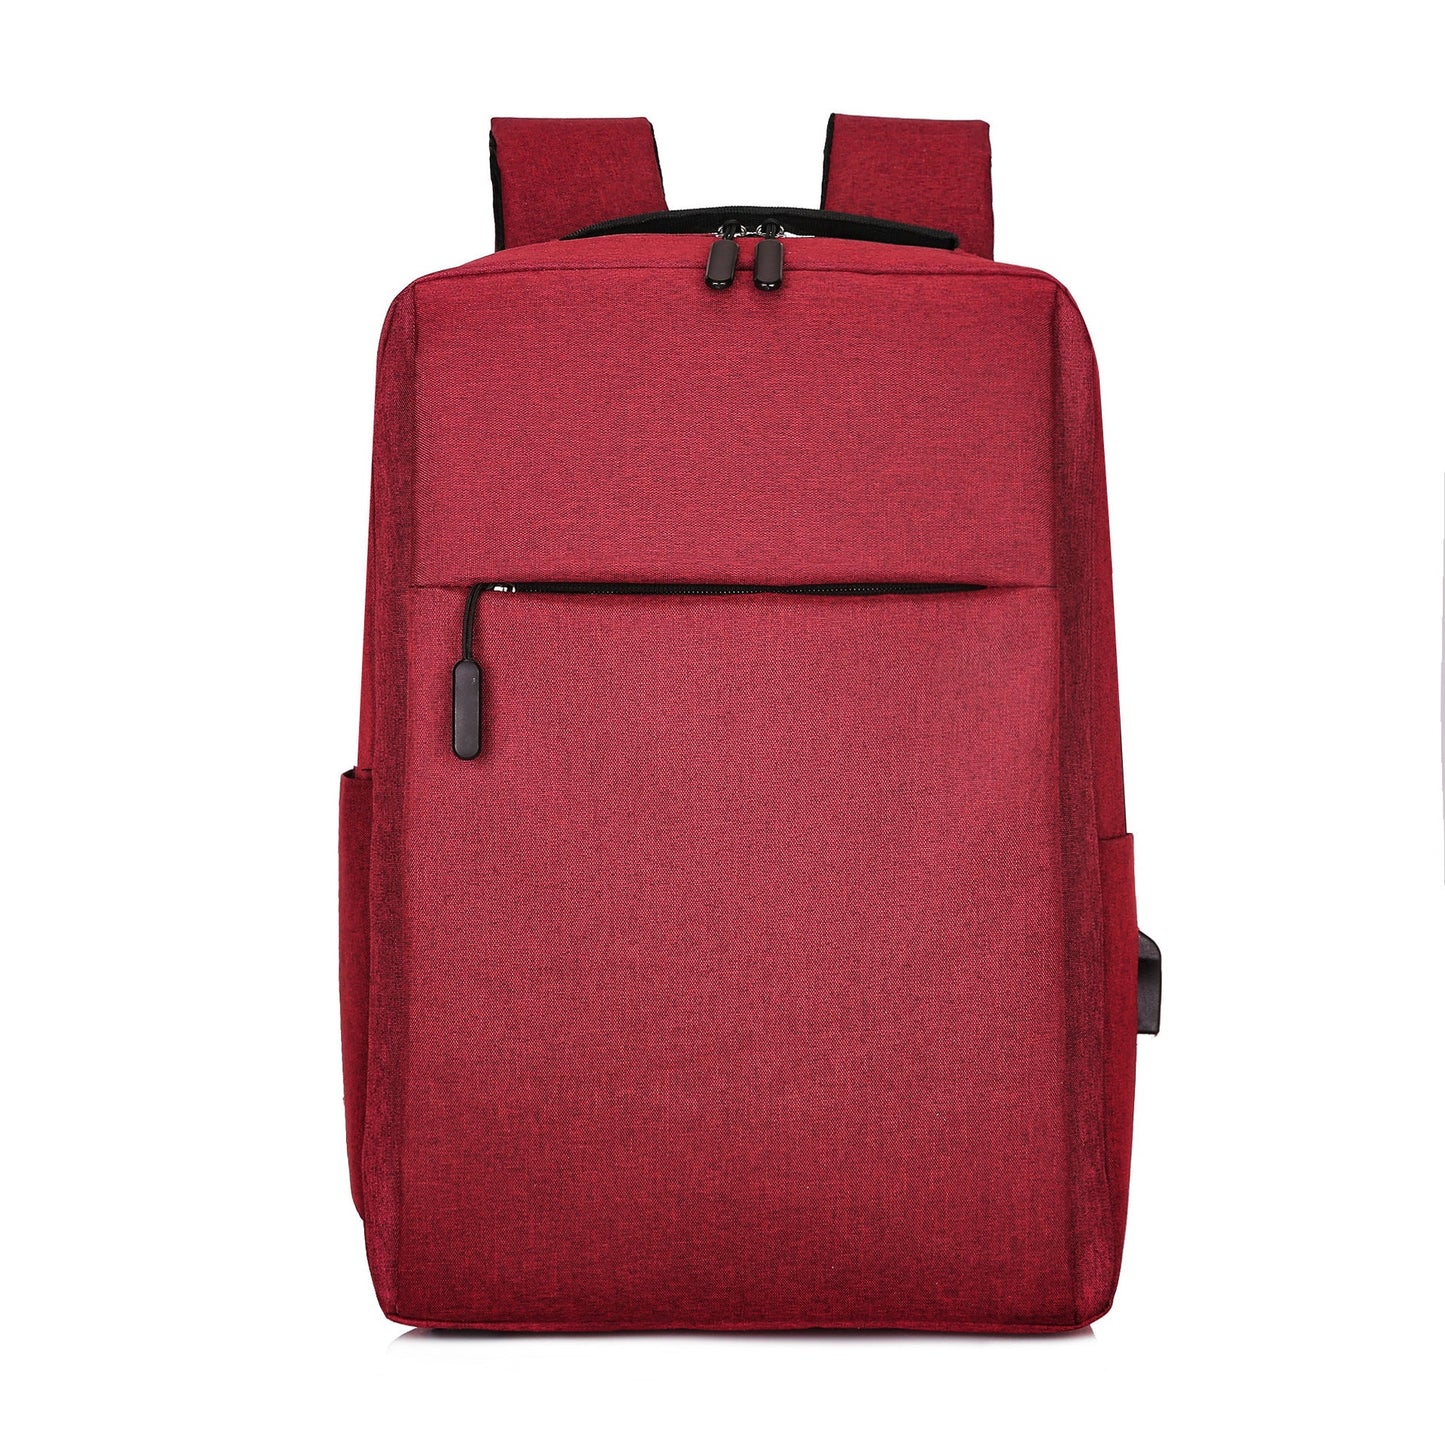 Minimalist backpack